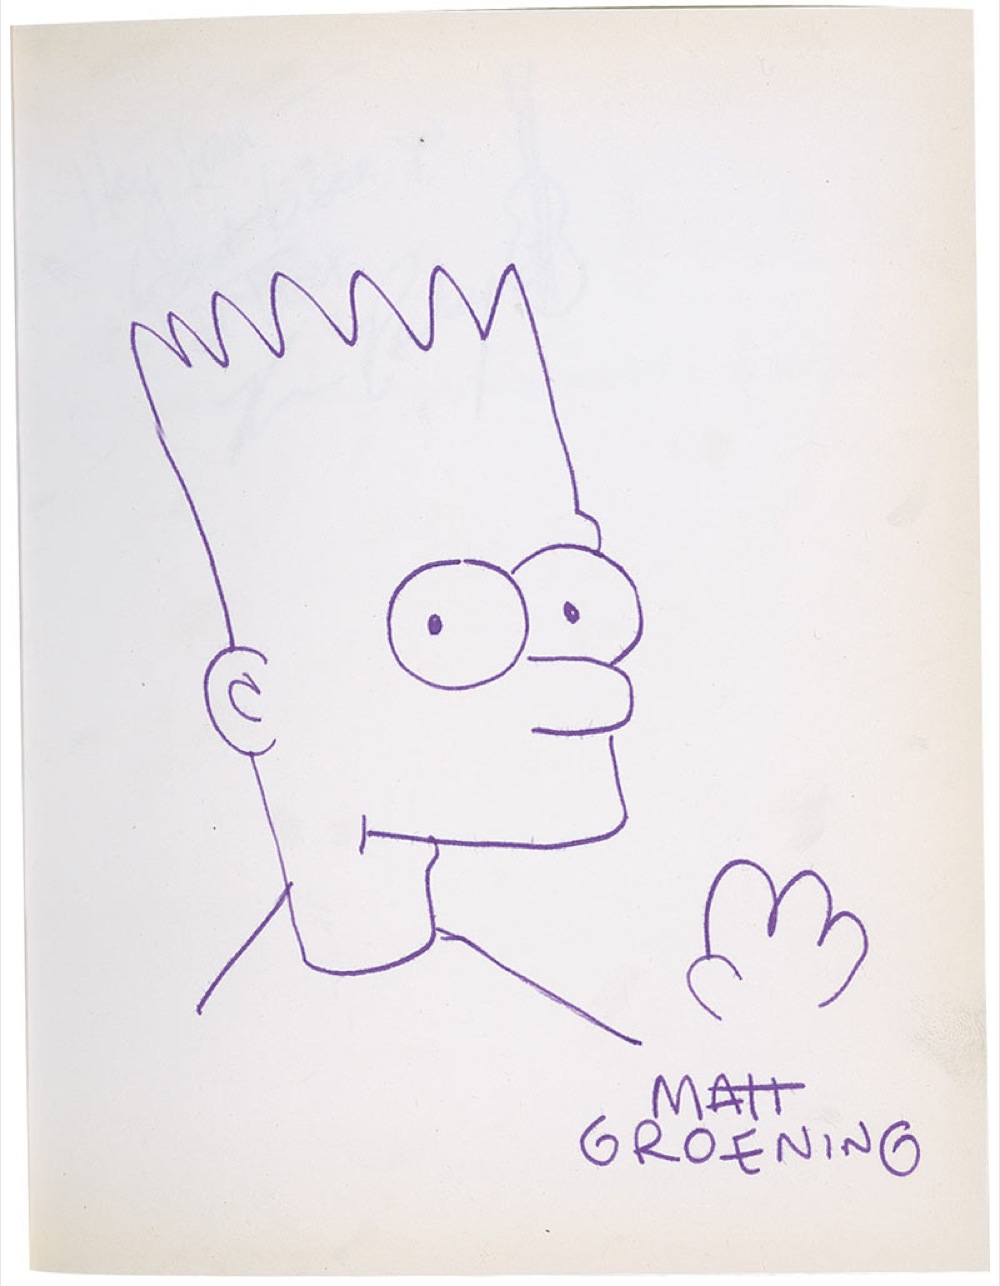 Lot #594 Matt Groening